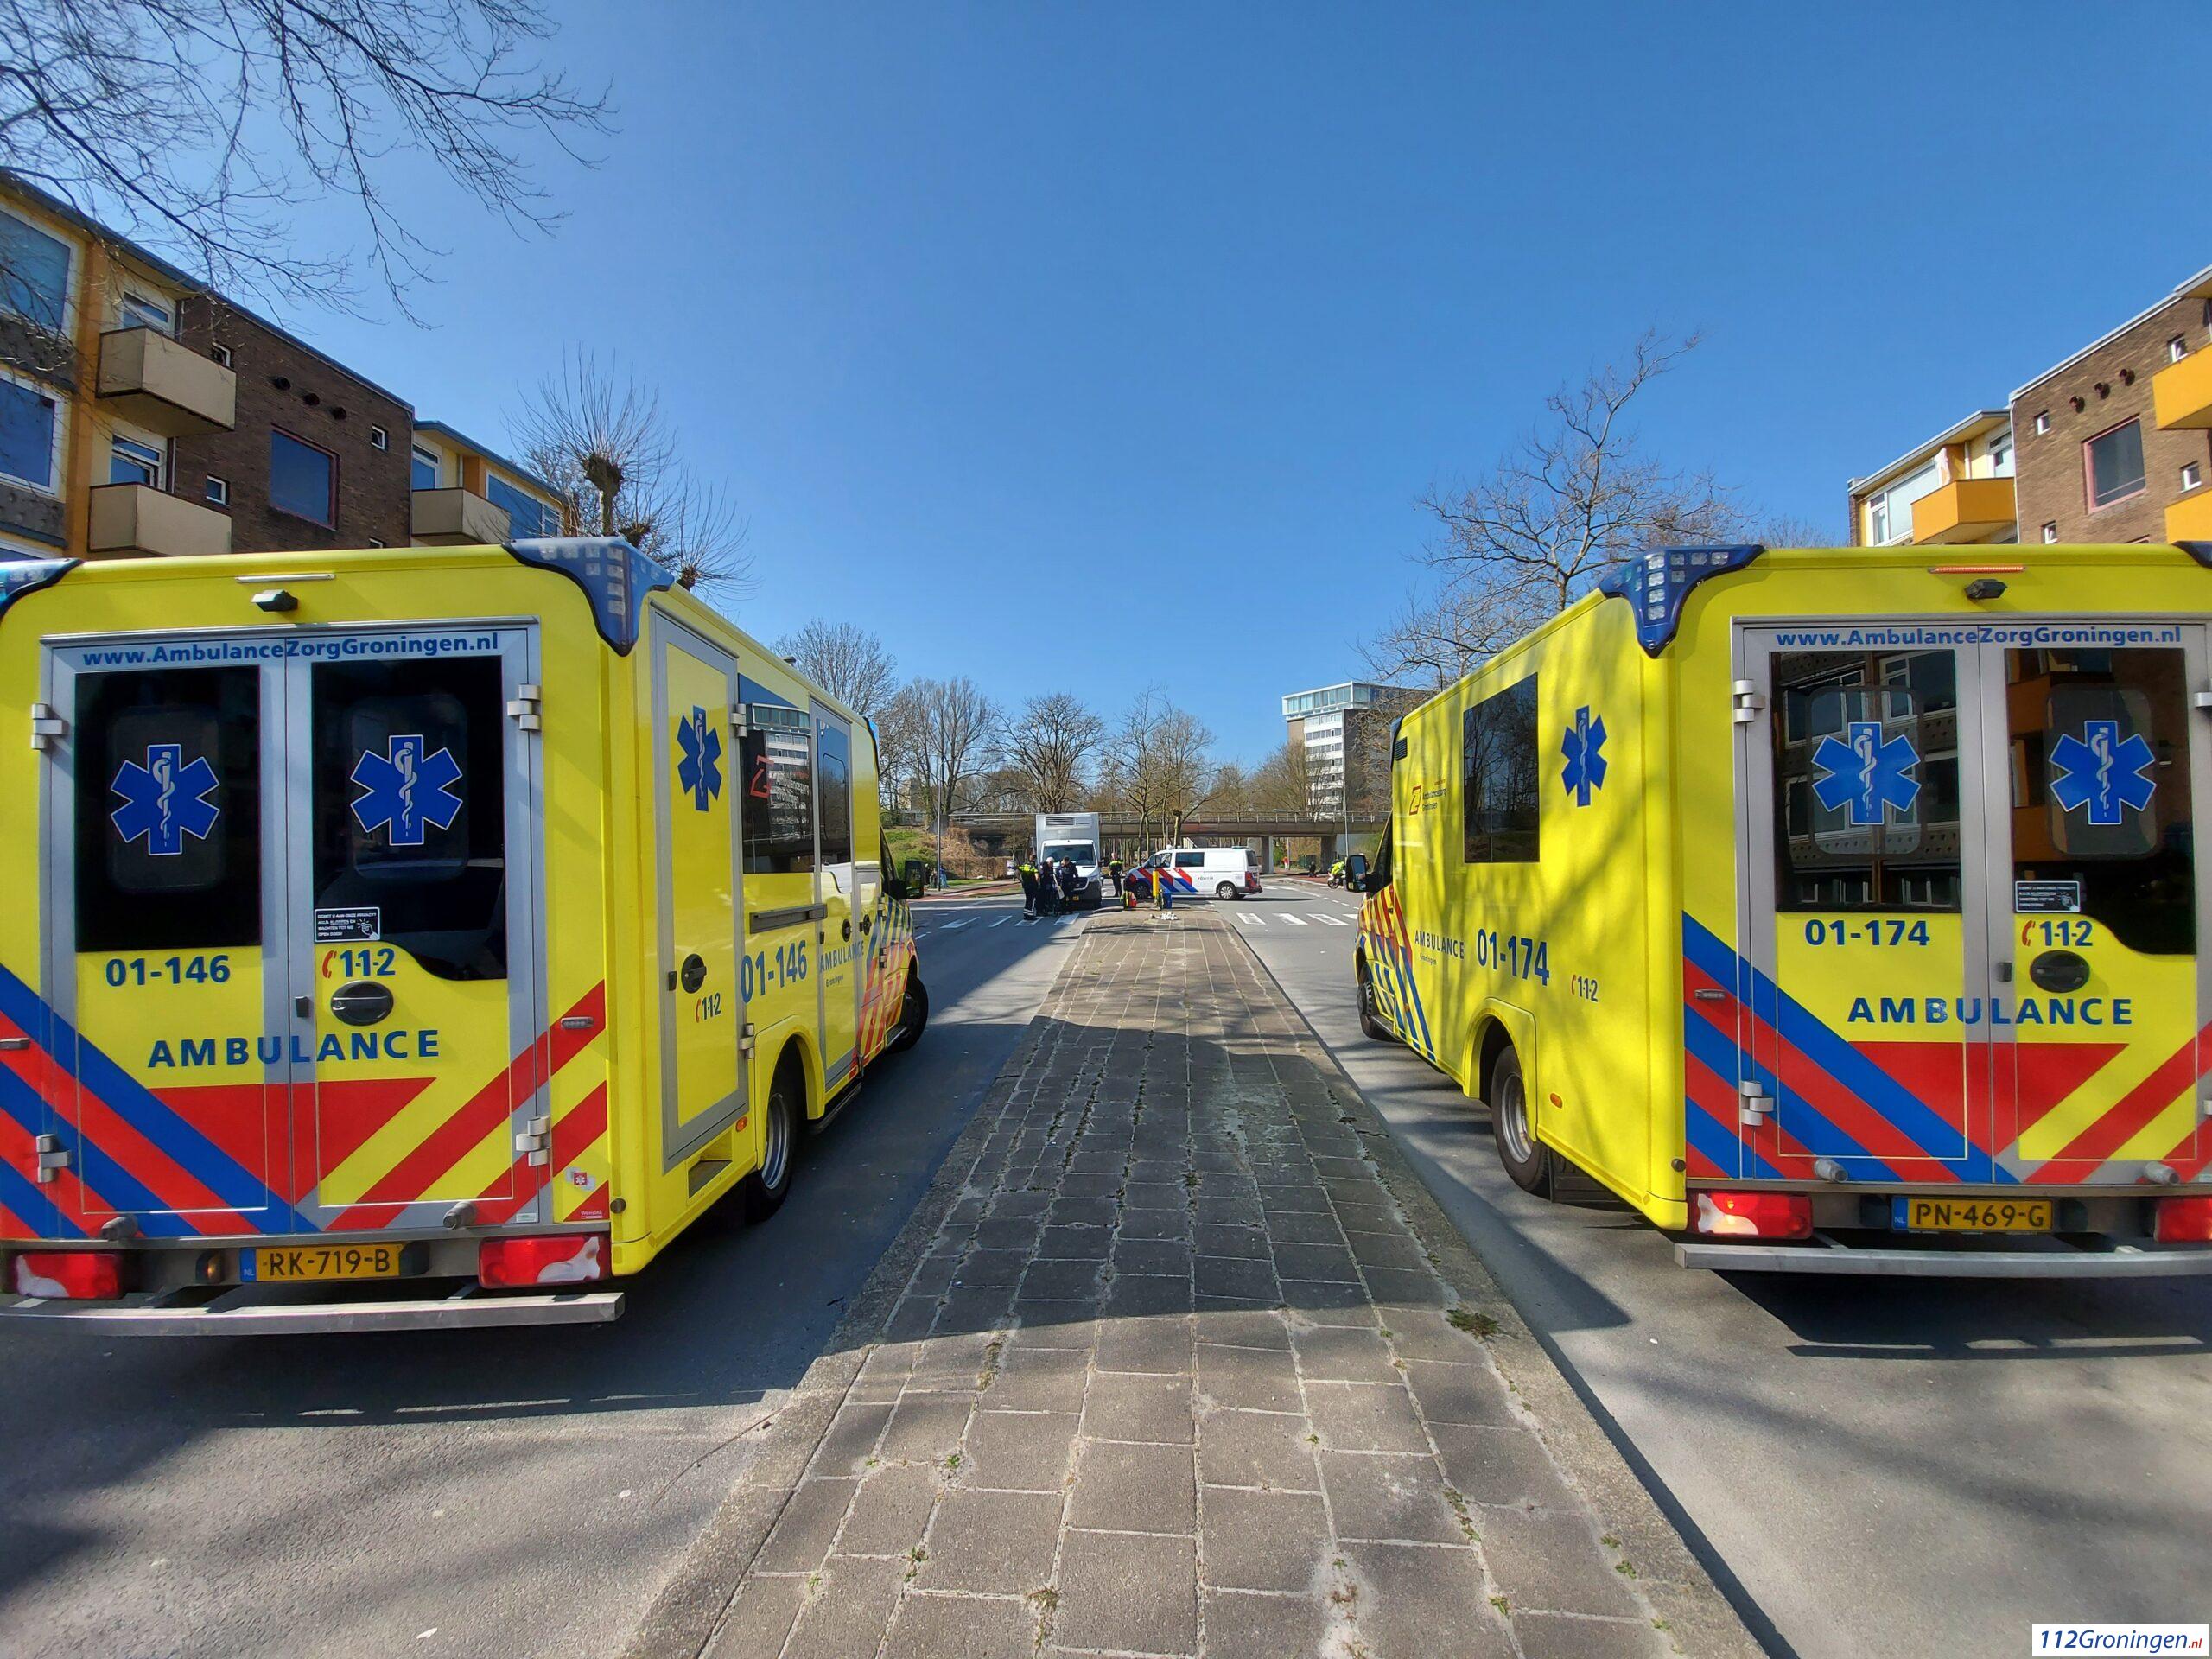 Zeer ernstig ongeval Asingastraat Groningen, 1 man zwaargewond.